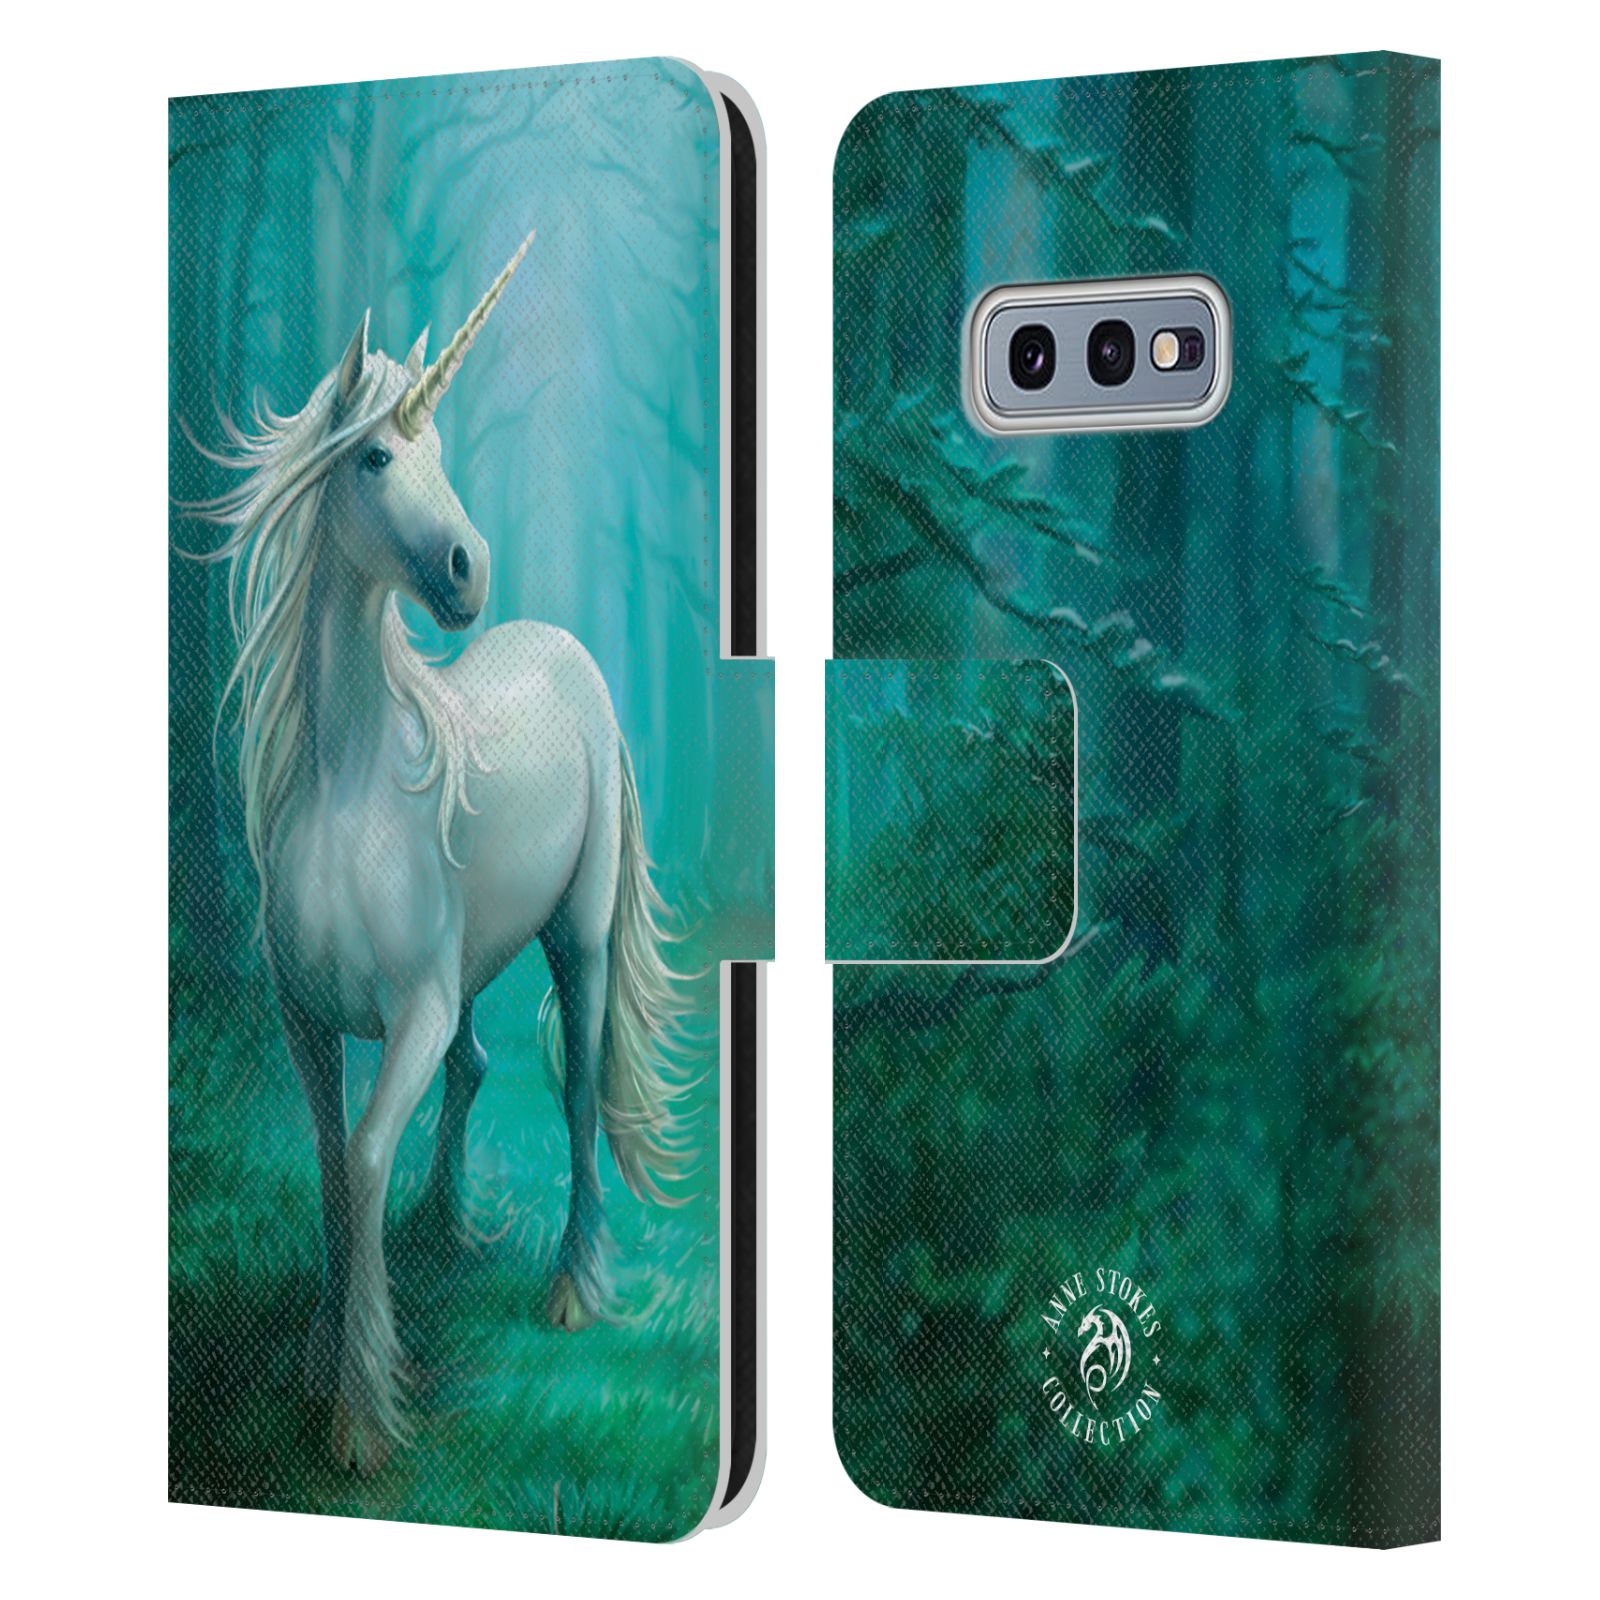 Pouzdro HEAD CASE na mobil Samsung Galaxy S10e  fantasy - jednorožec v lese